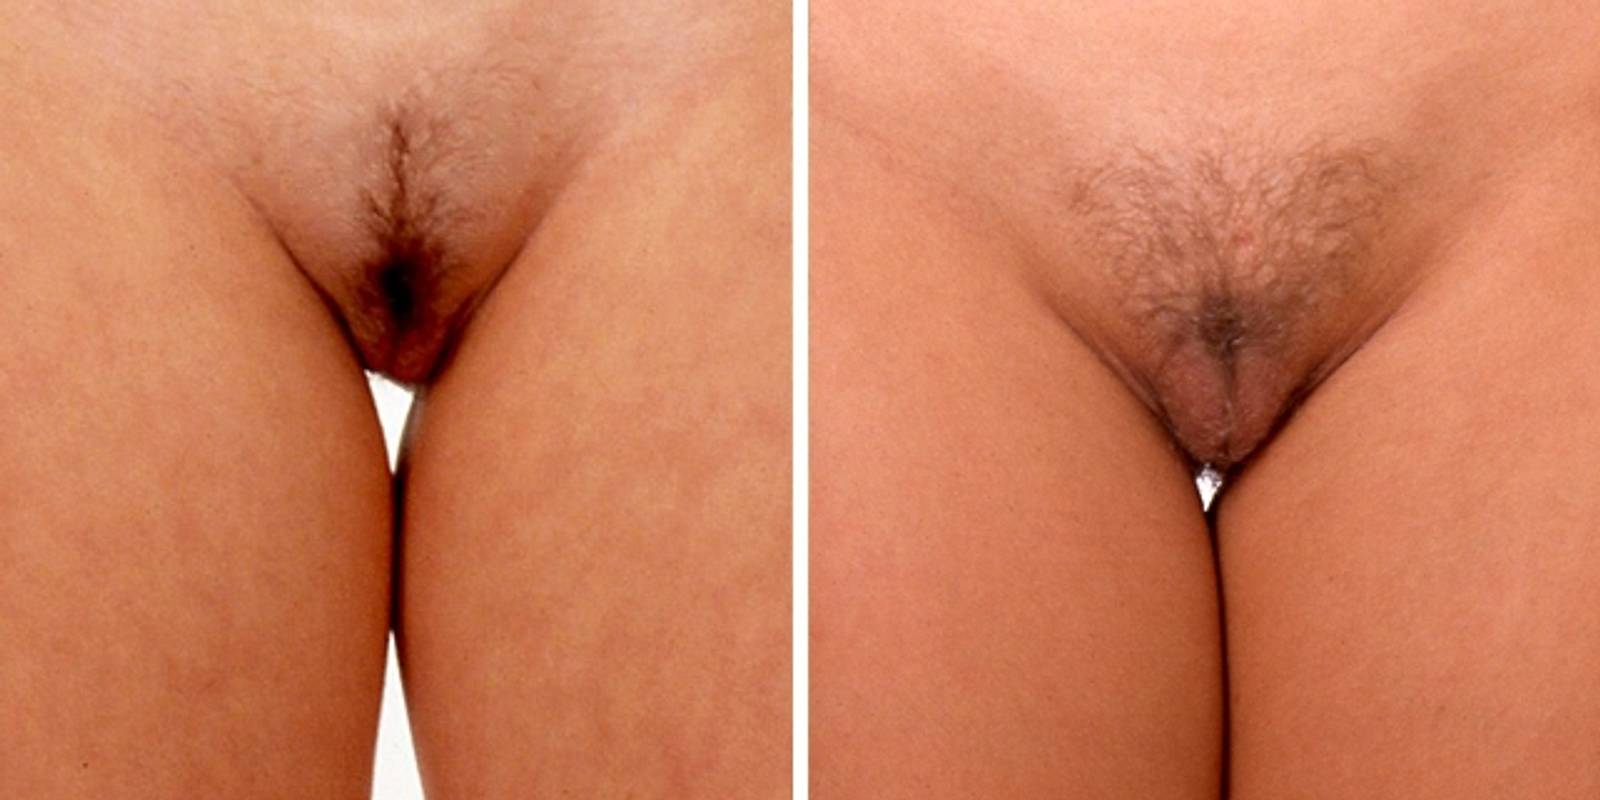 Vagina bilder vergleich nackt